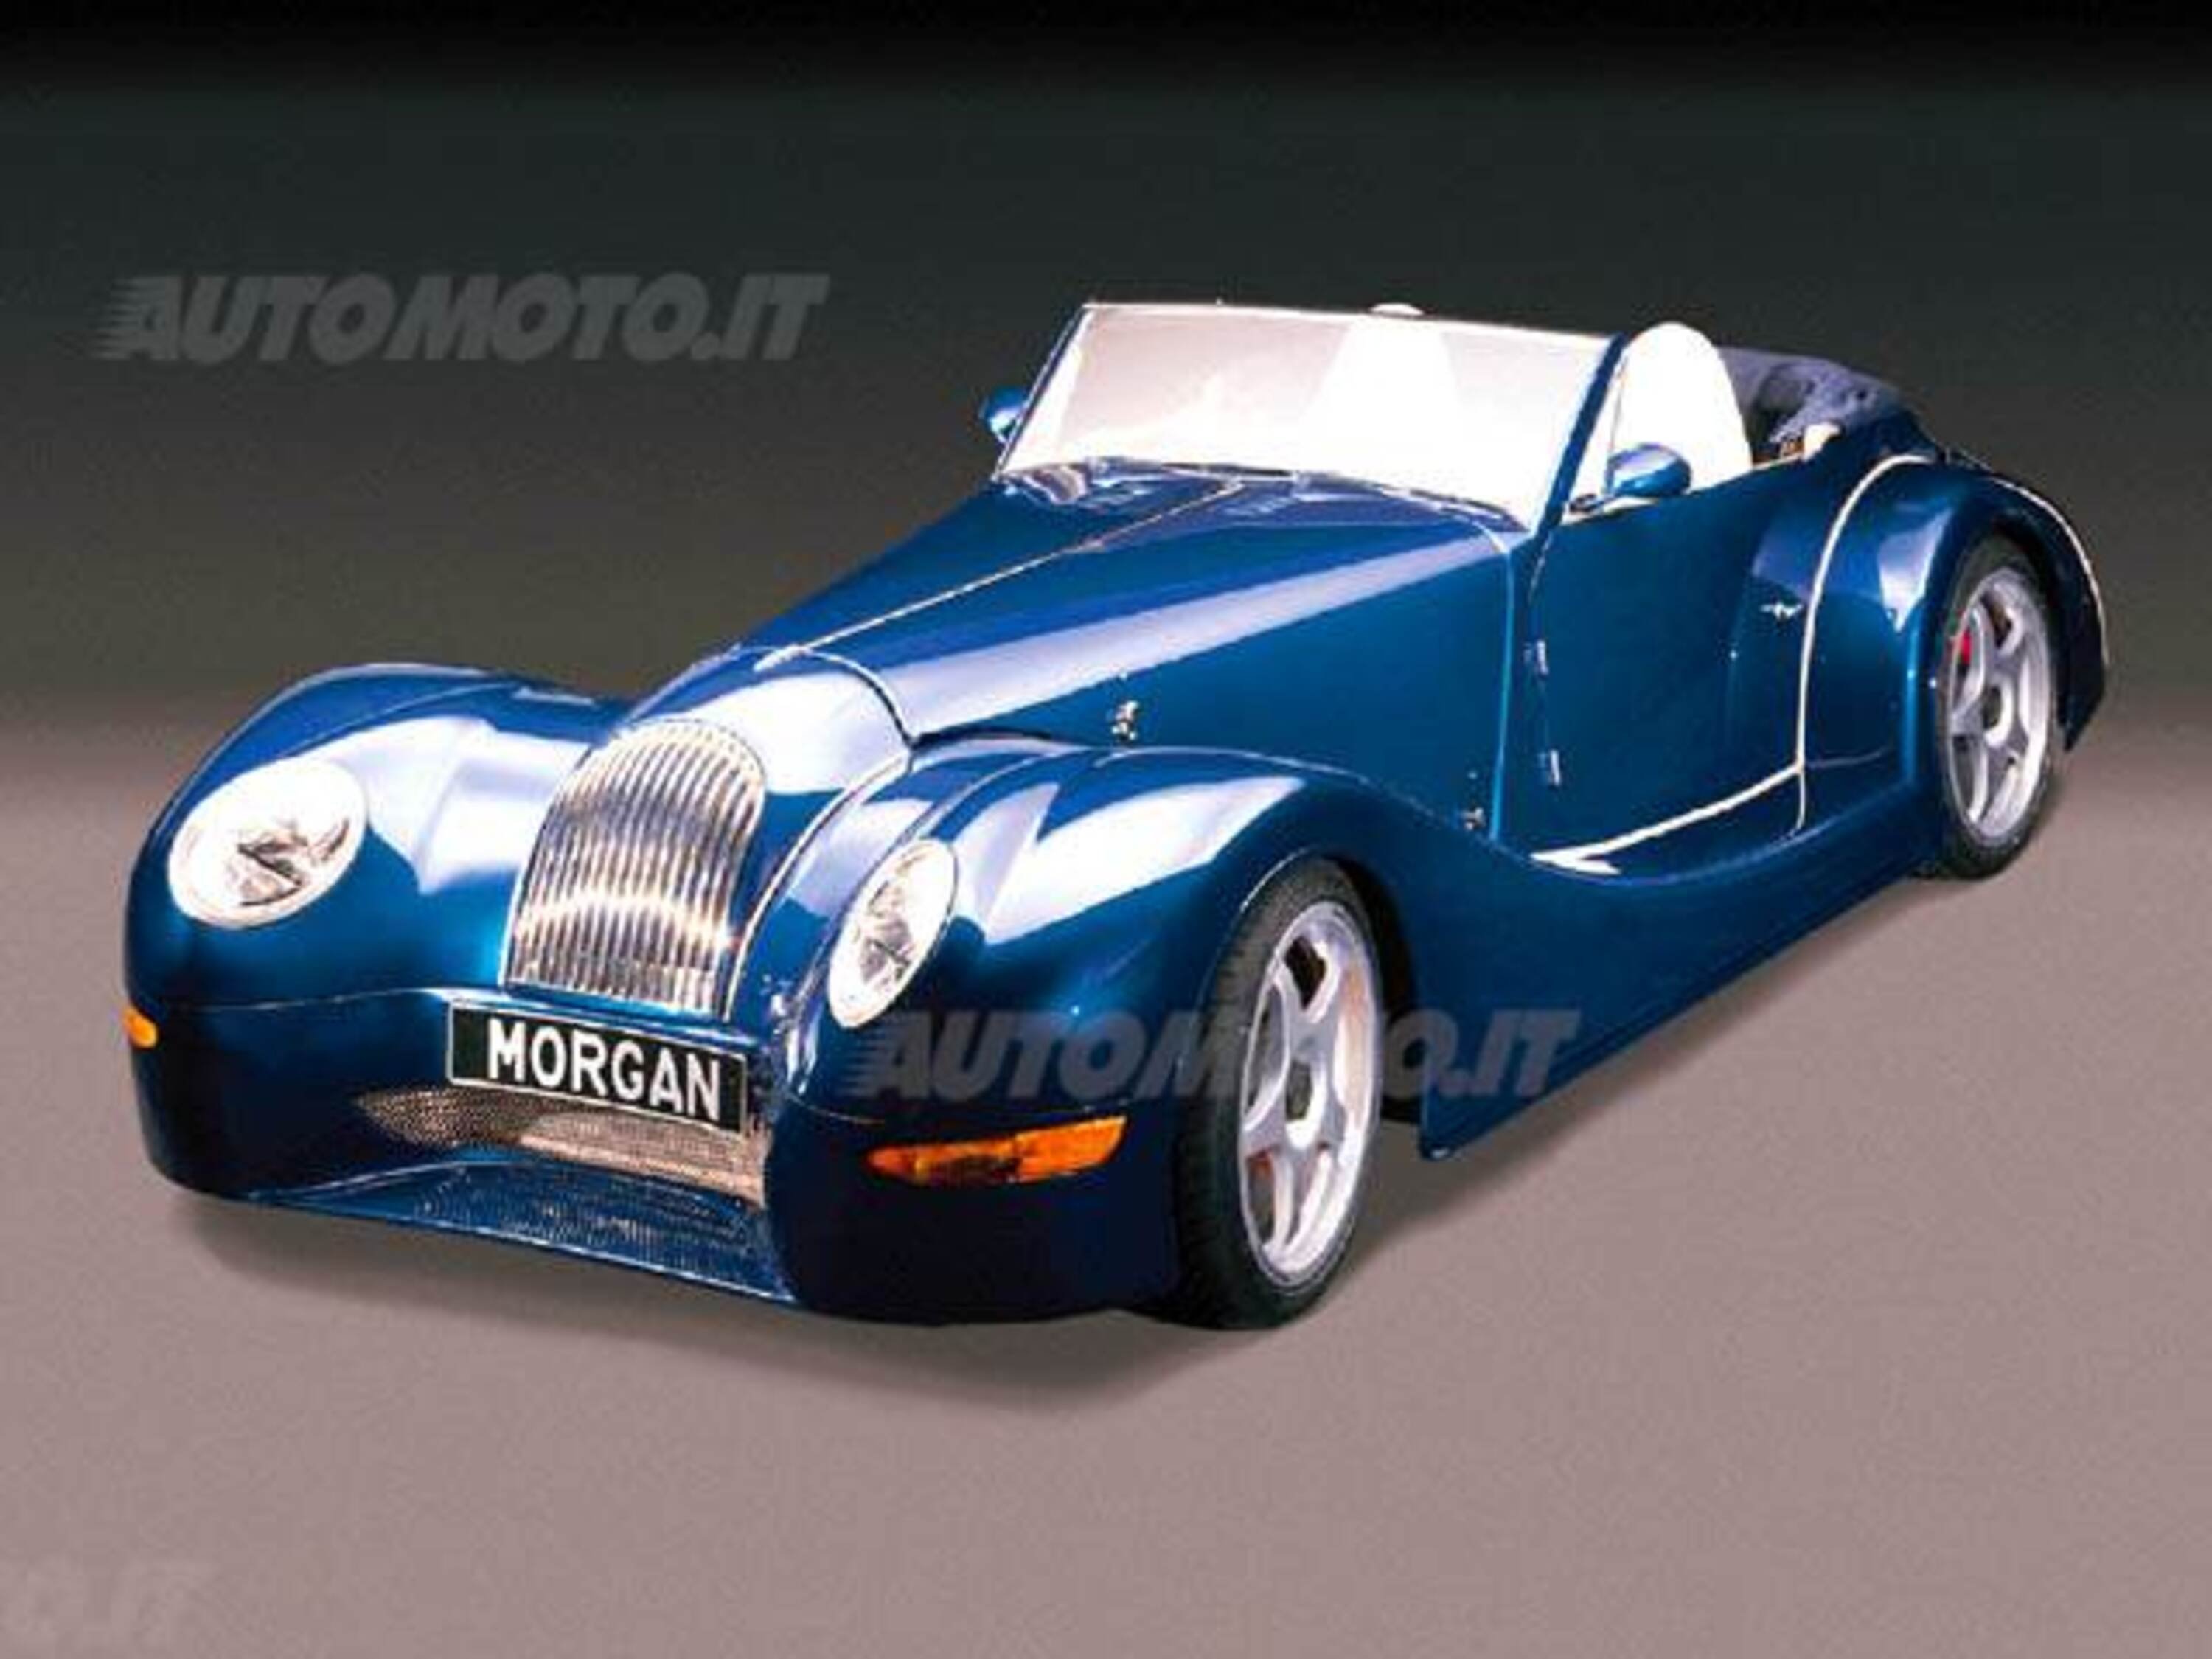 Morgan Morgan Aero 8 4.4i V8 32V cat 